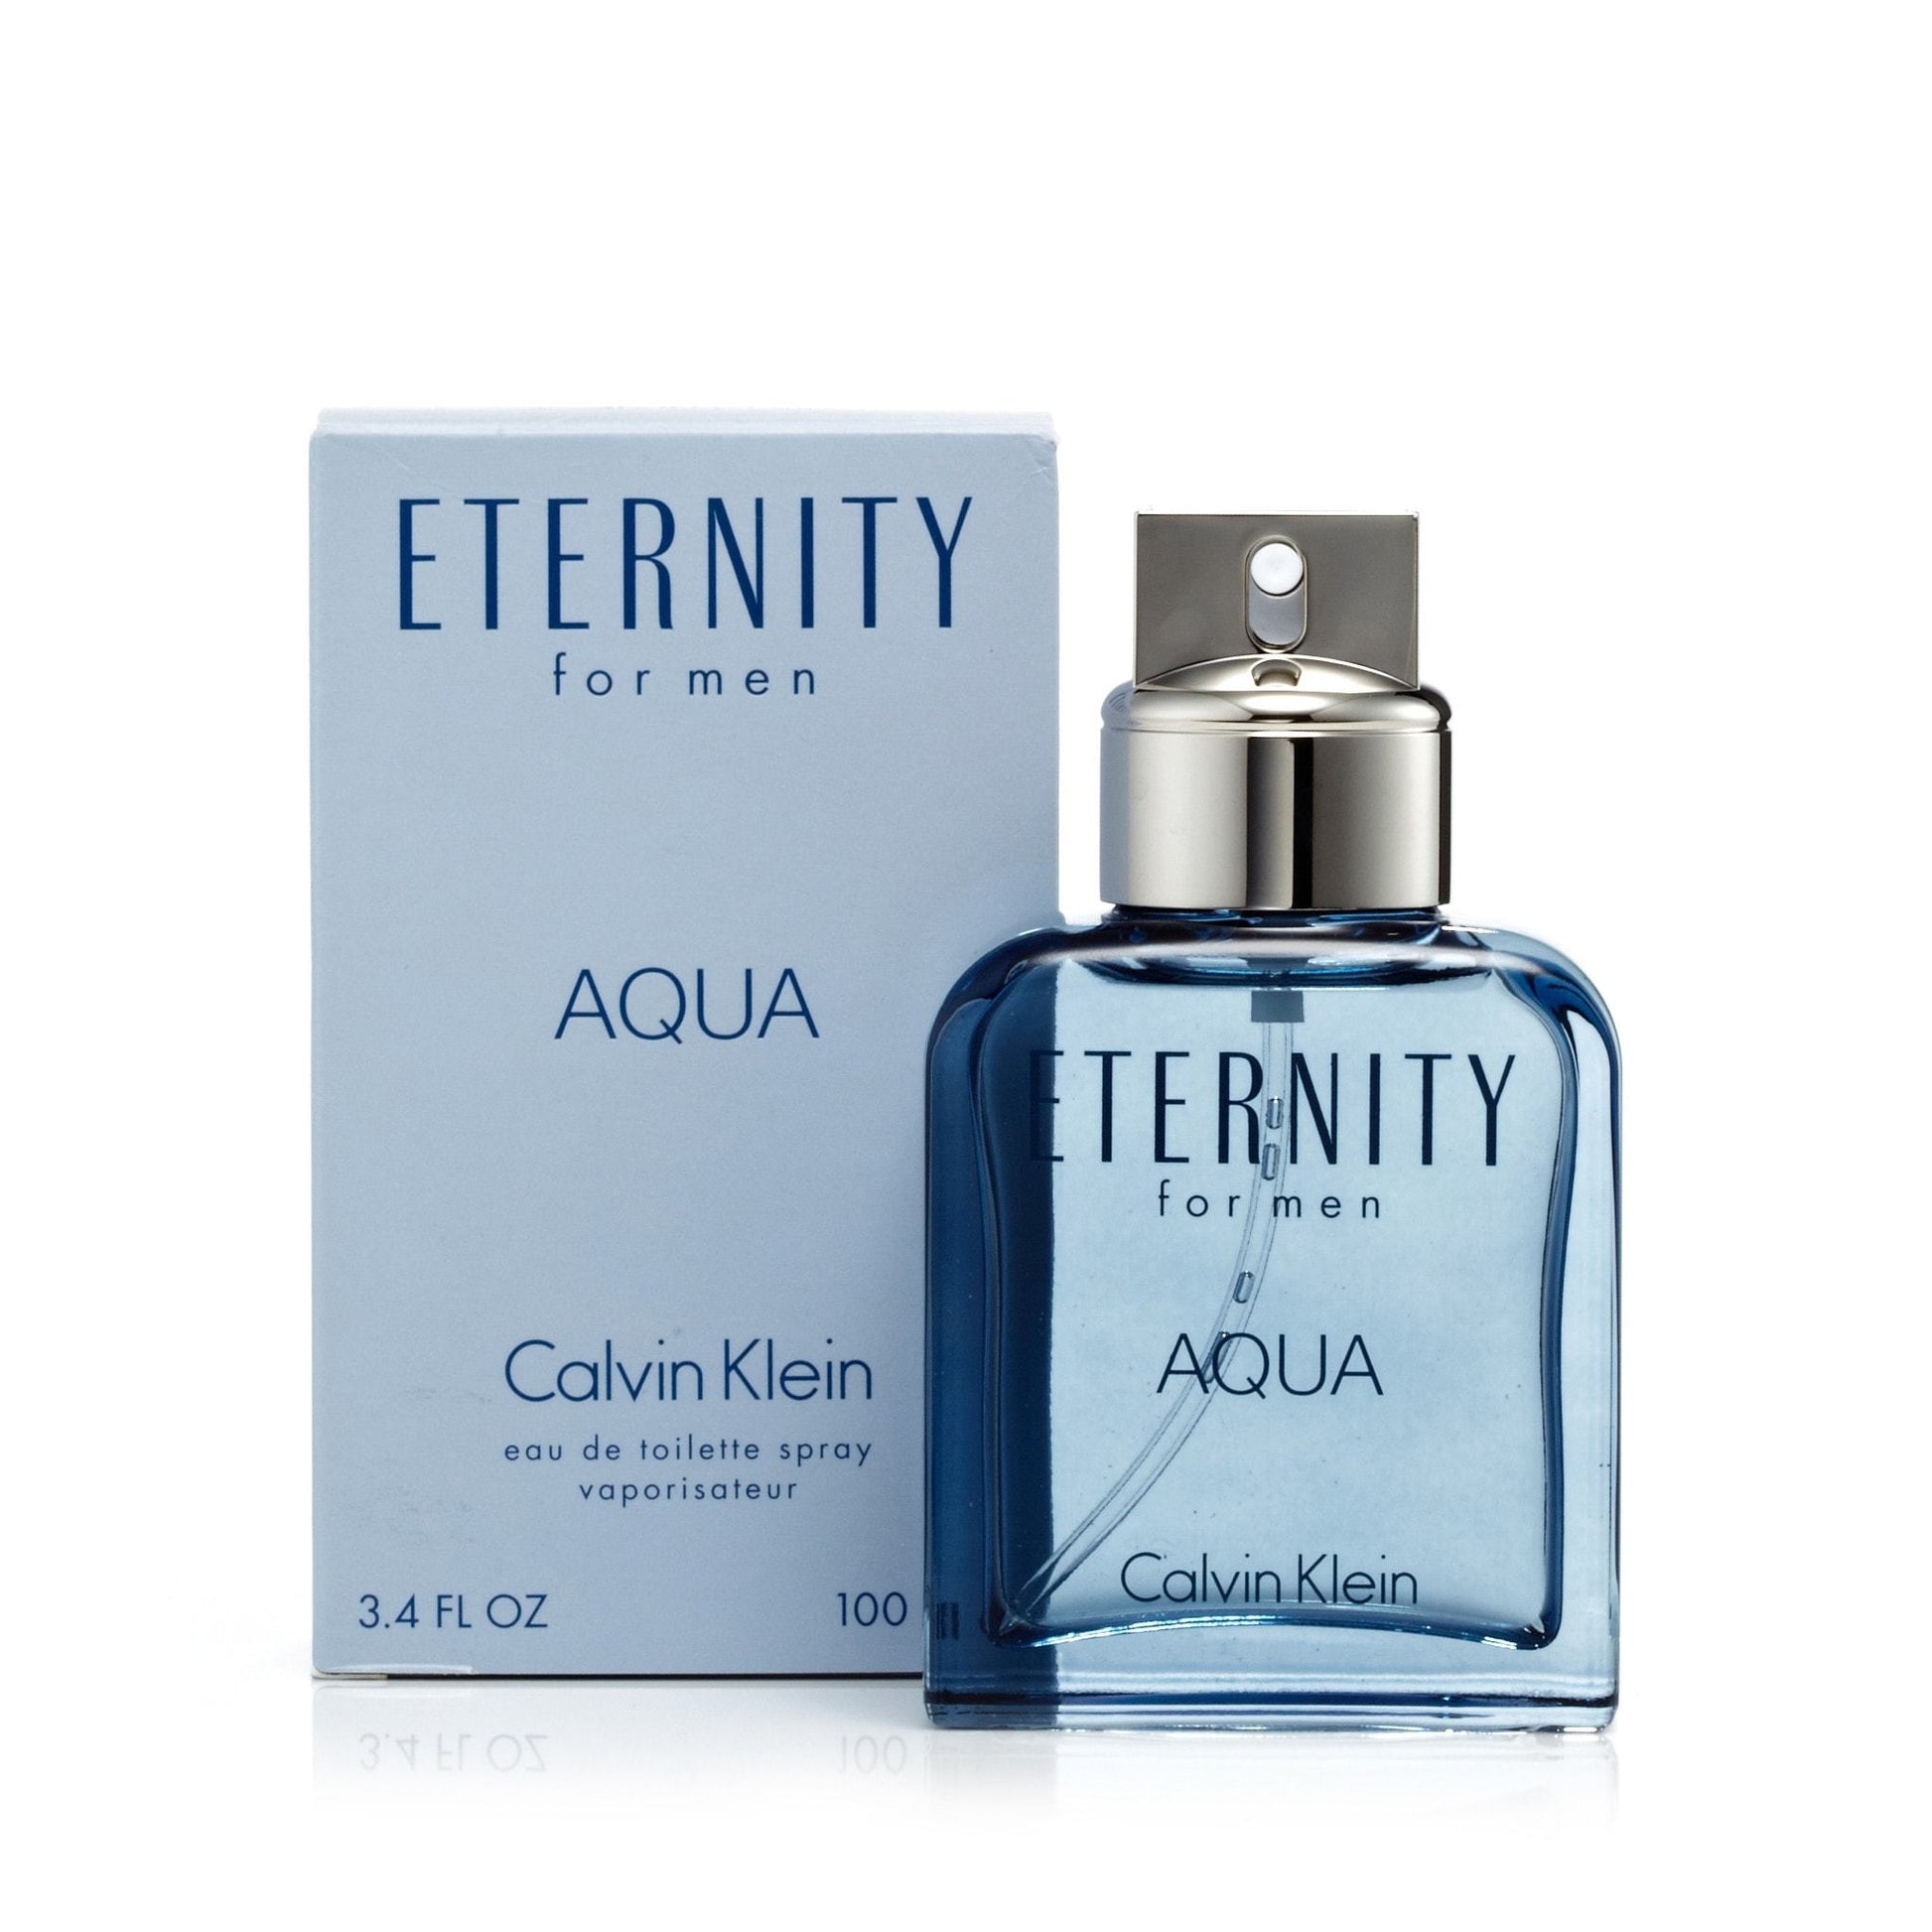 Eternity Aqua Eau de Toilette Spray for Men by Calvin Klein, Product image 8